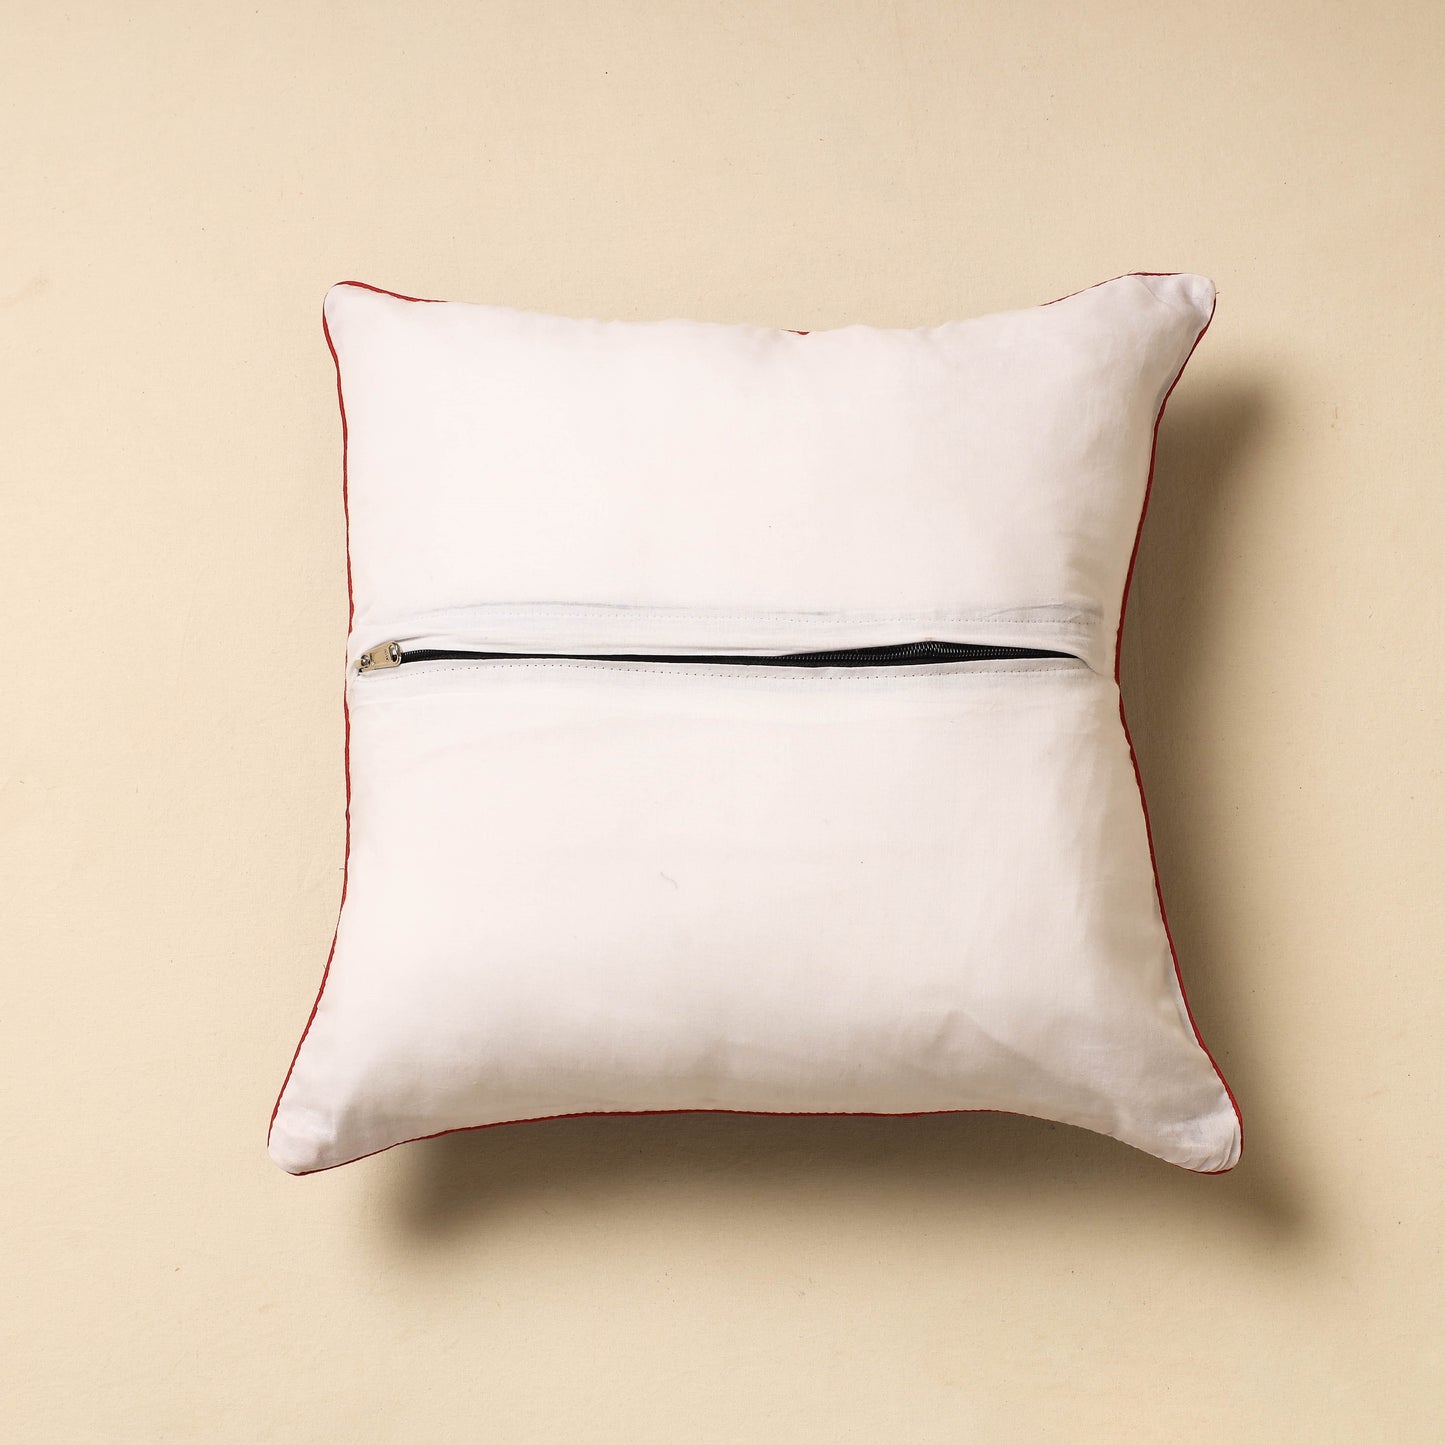 Multicolor - Shibori Tie-Dye Cotton Cushion Cover (16 x 16 in)